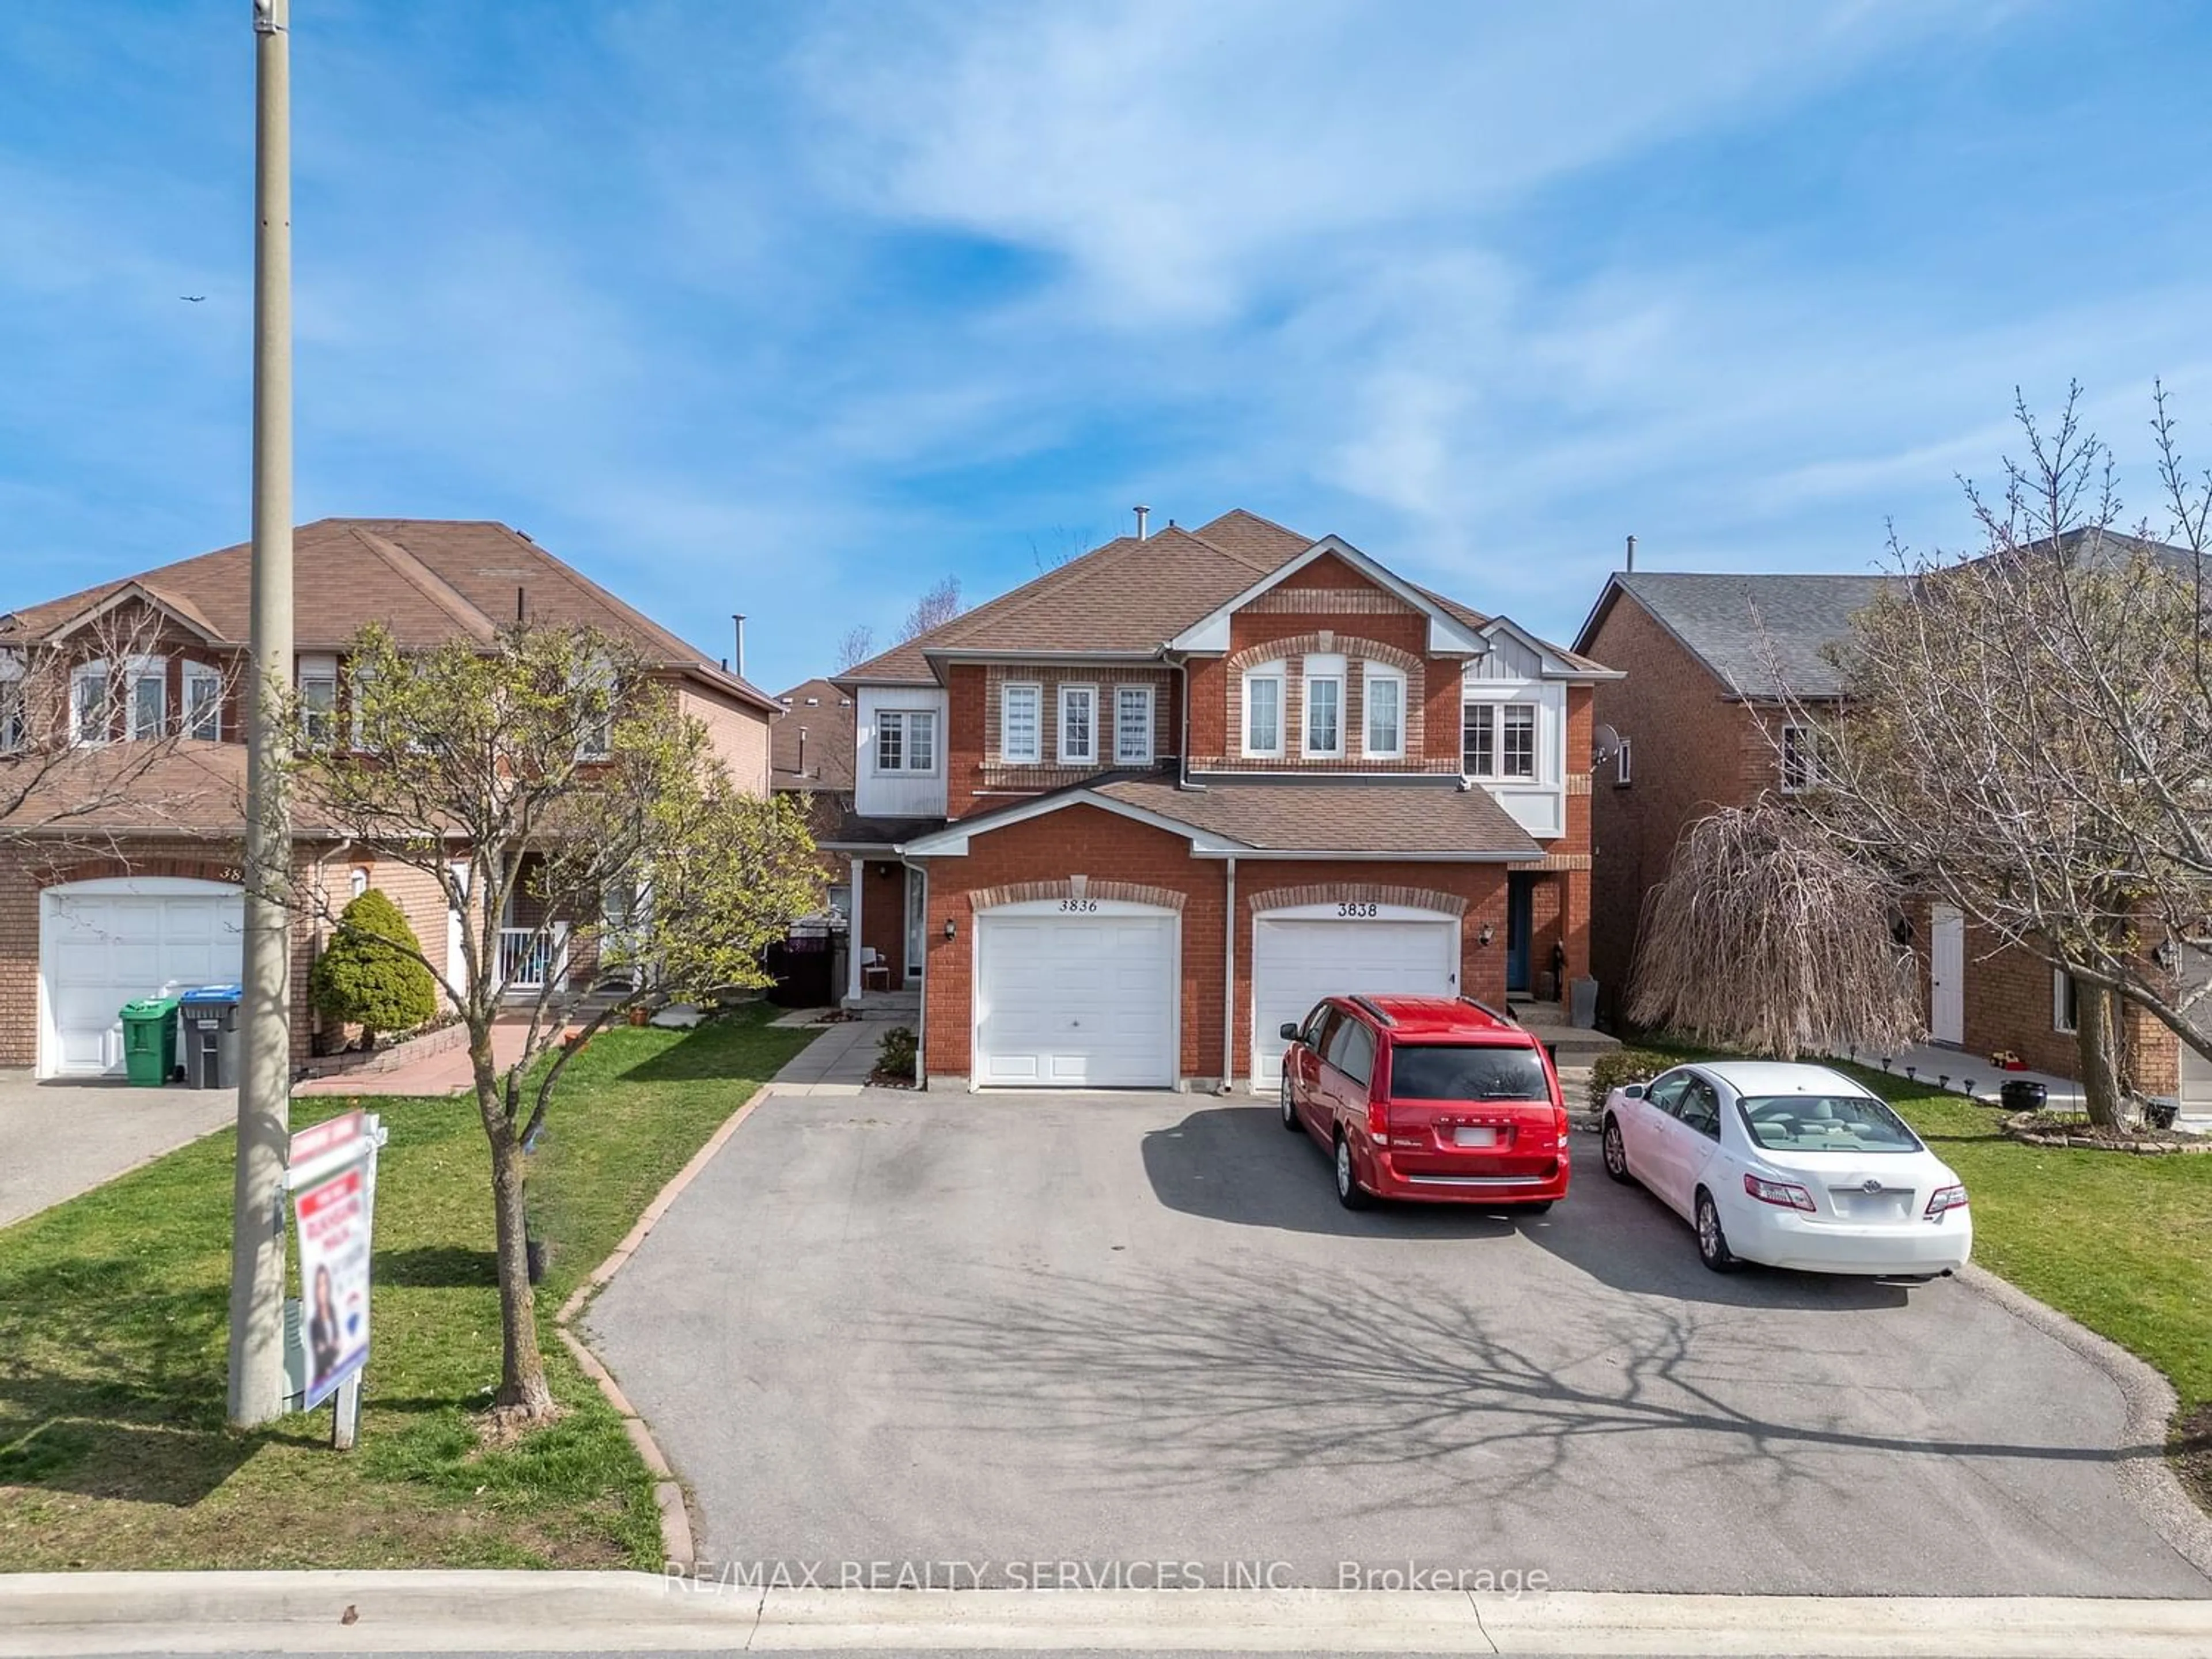 Frontside or backside of a home for 3836 Allcroft Rd, Mississauga Ontario L5N 6V6